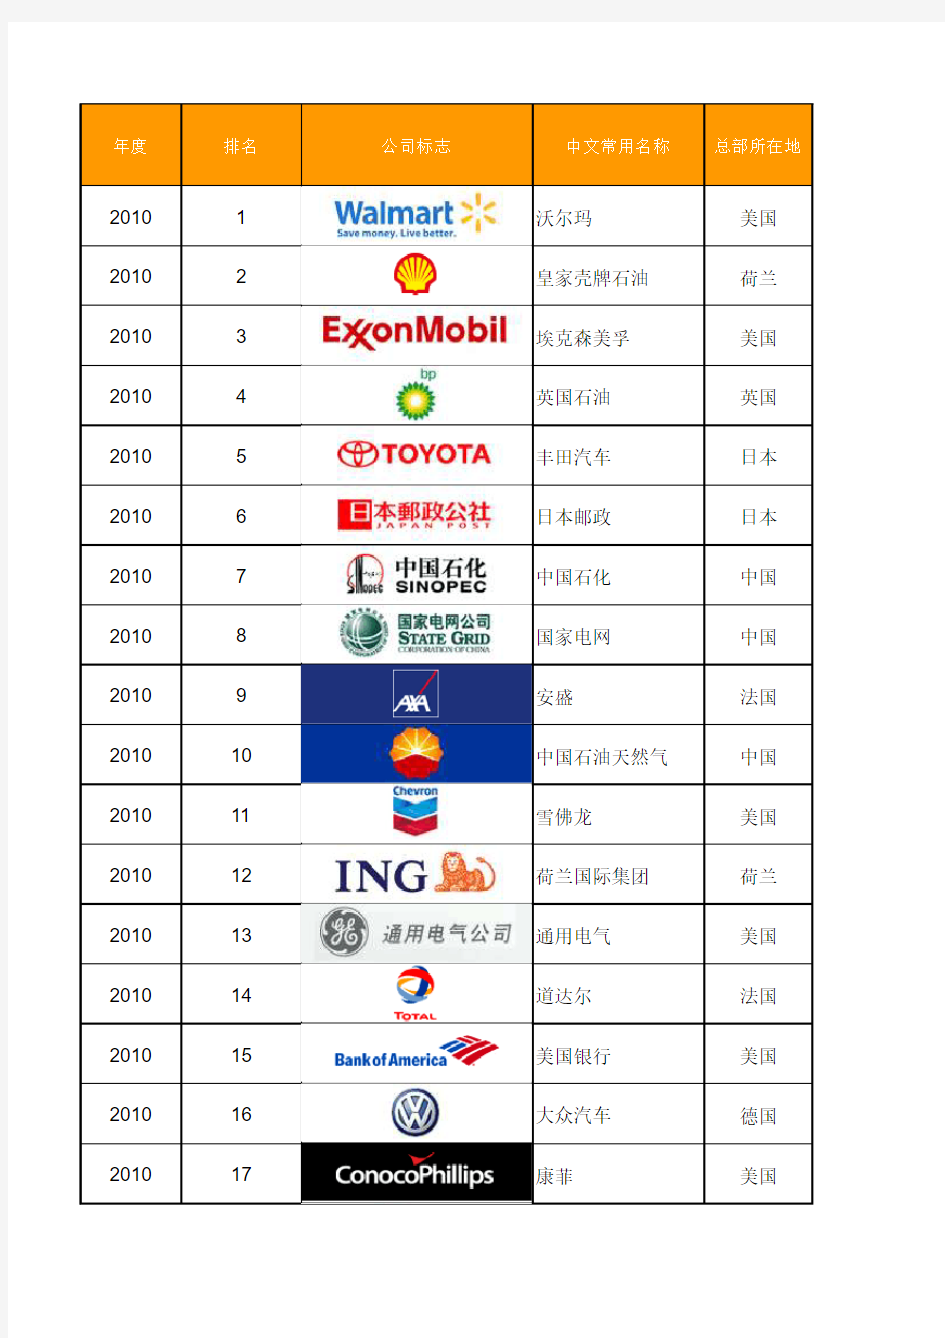 2003-2010各年度世界500强公司名単(含Logo)